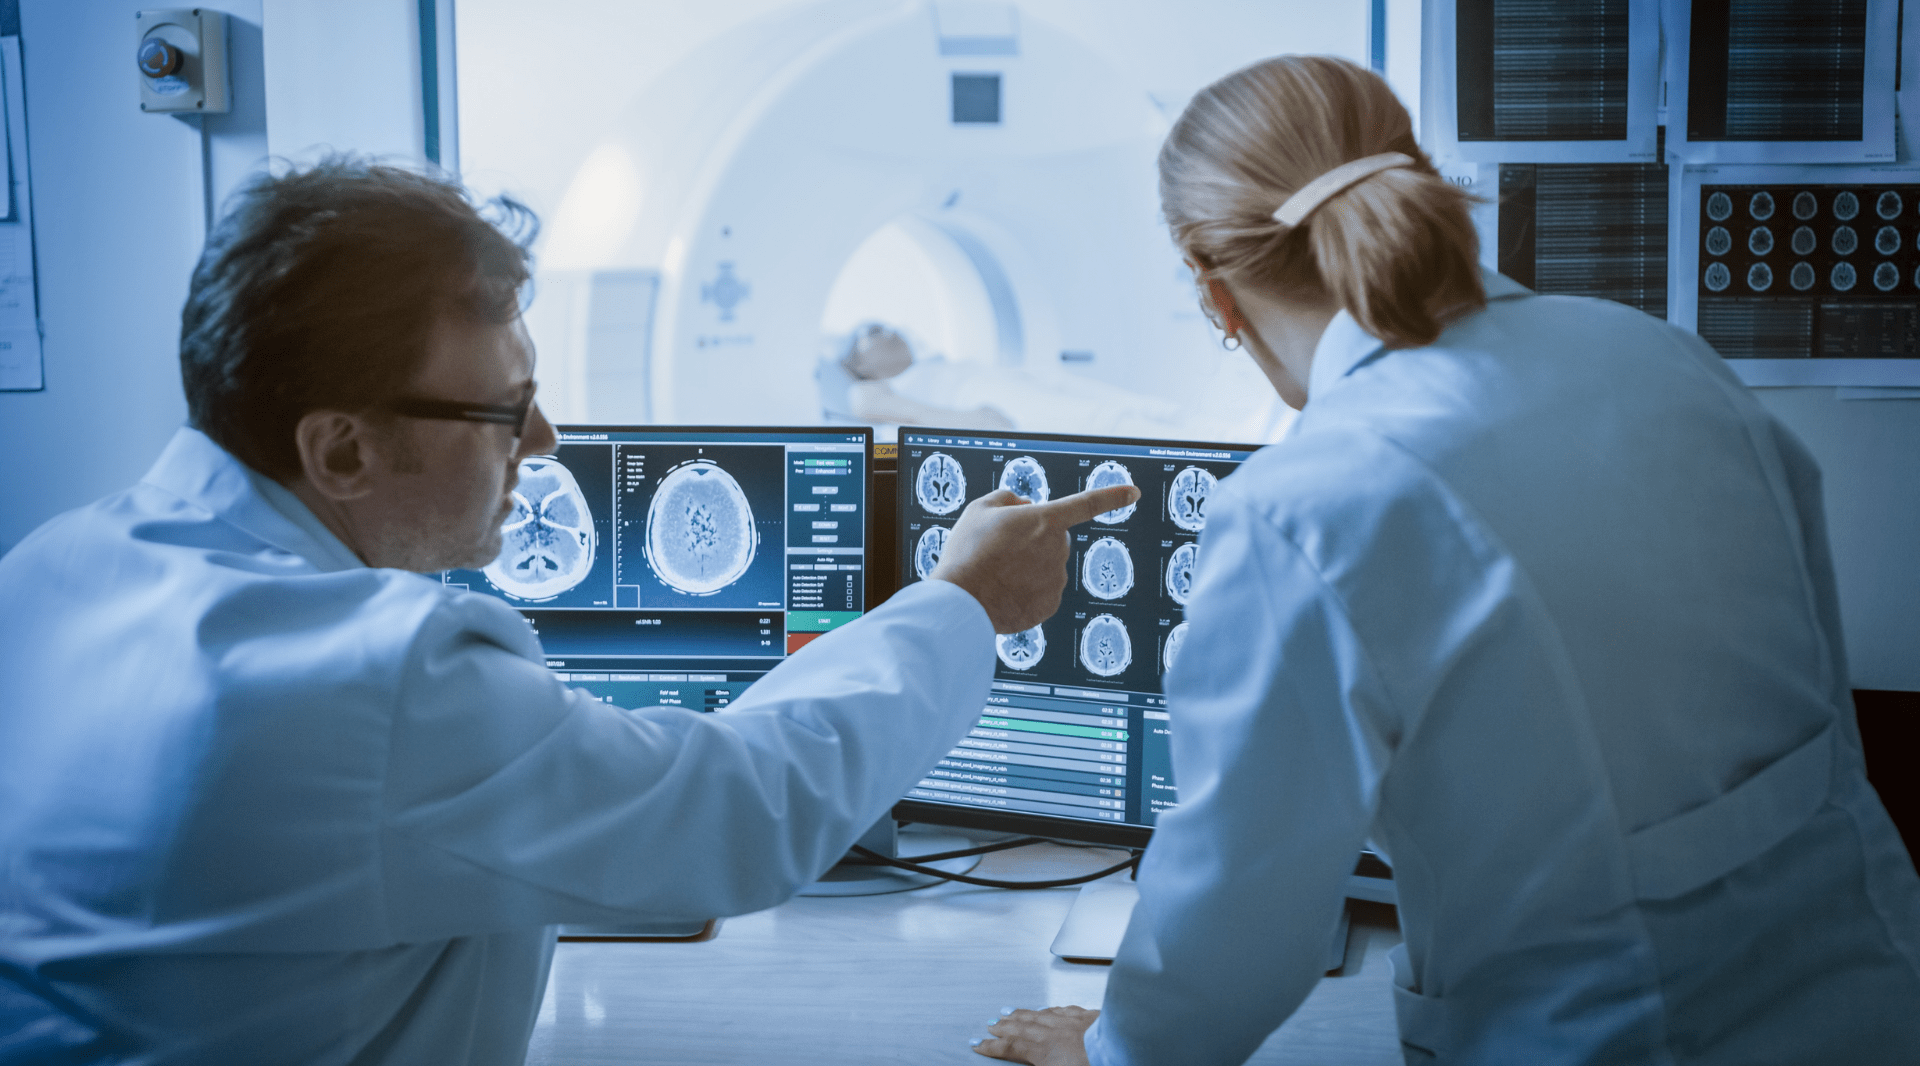 Inteligência artificial: ferramentas do sistema PACS mudam trabalho do radiologista